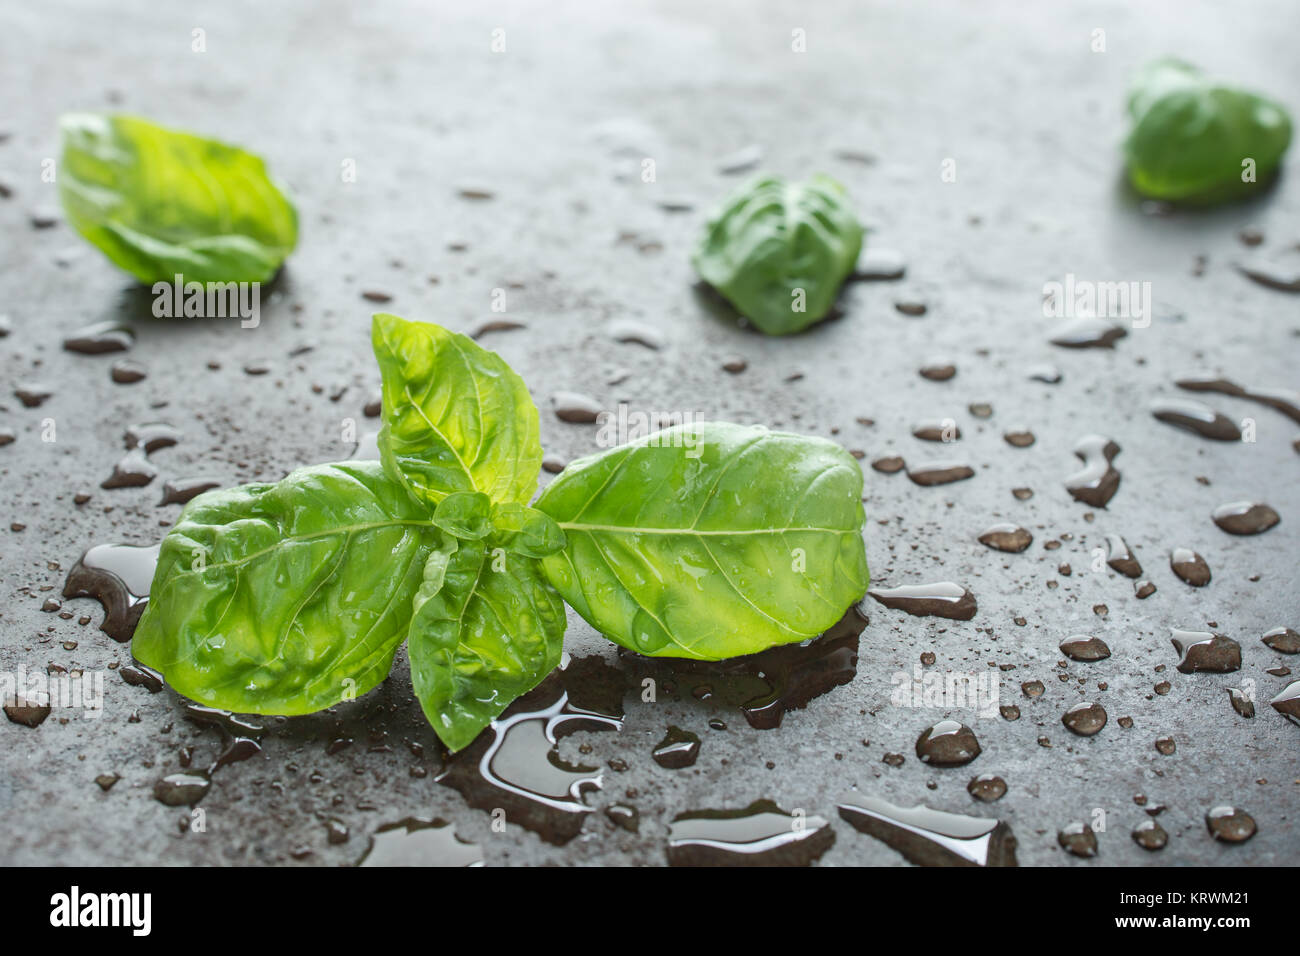 Grüne Blätter vom Basilikum mit Wasser auf einem Blech im Gegenlicht Stock Photo